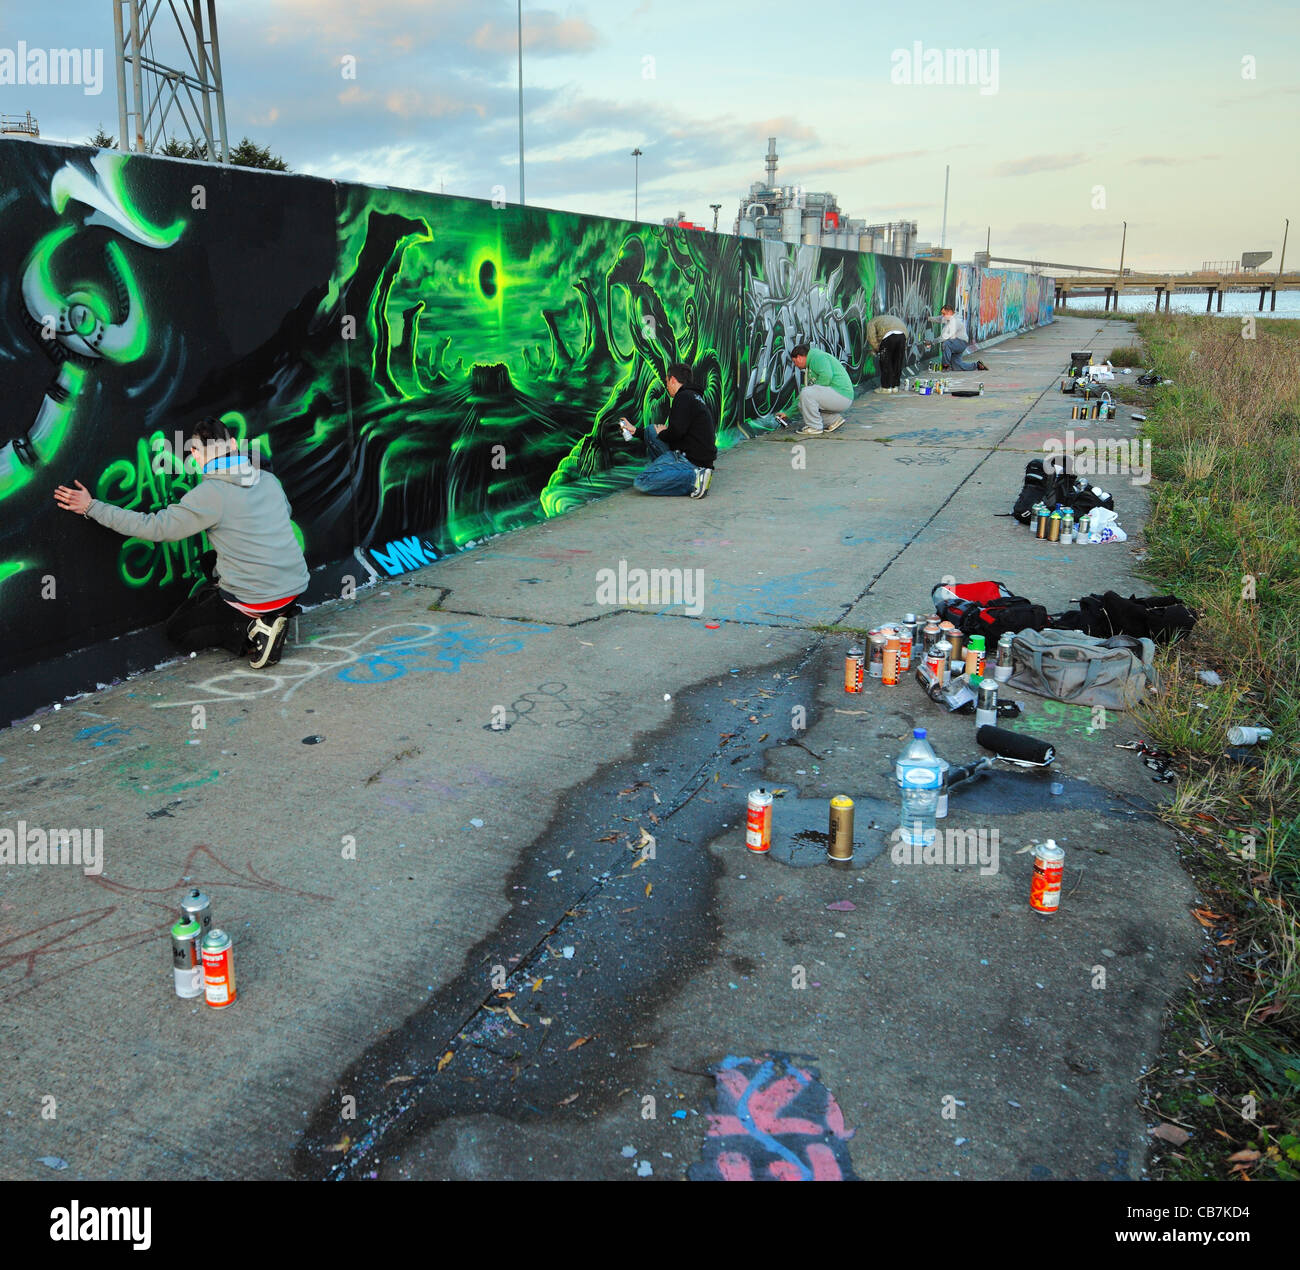 Gruppe von Jugendlichen Spritzlackierung eine rechtliche Graffitiwand. Stockfoto